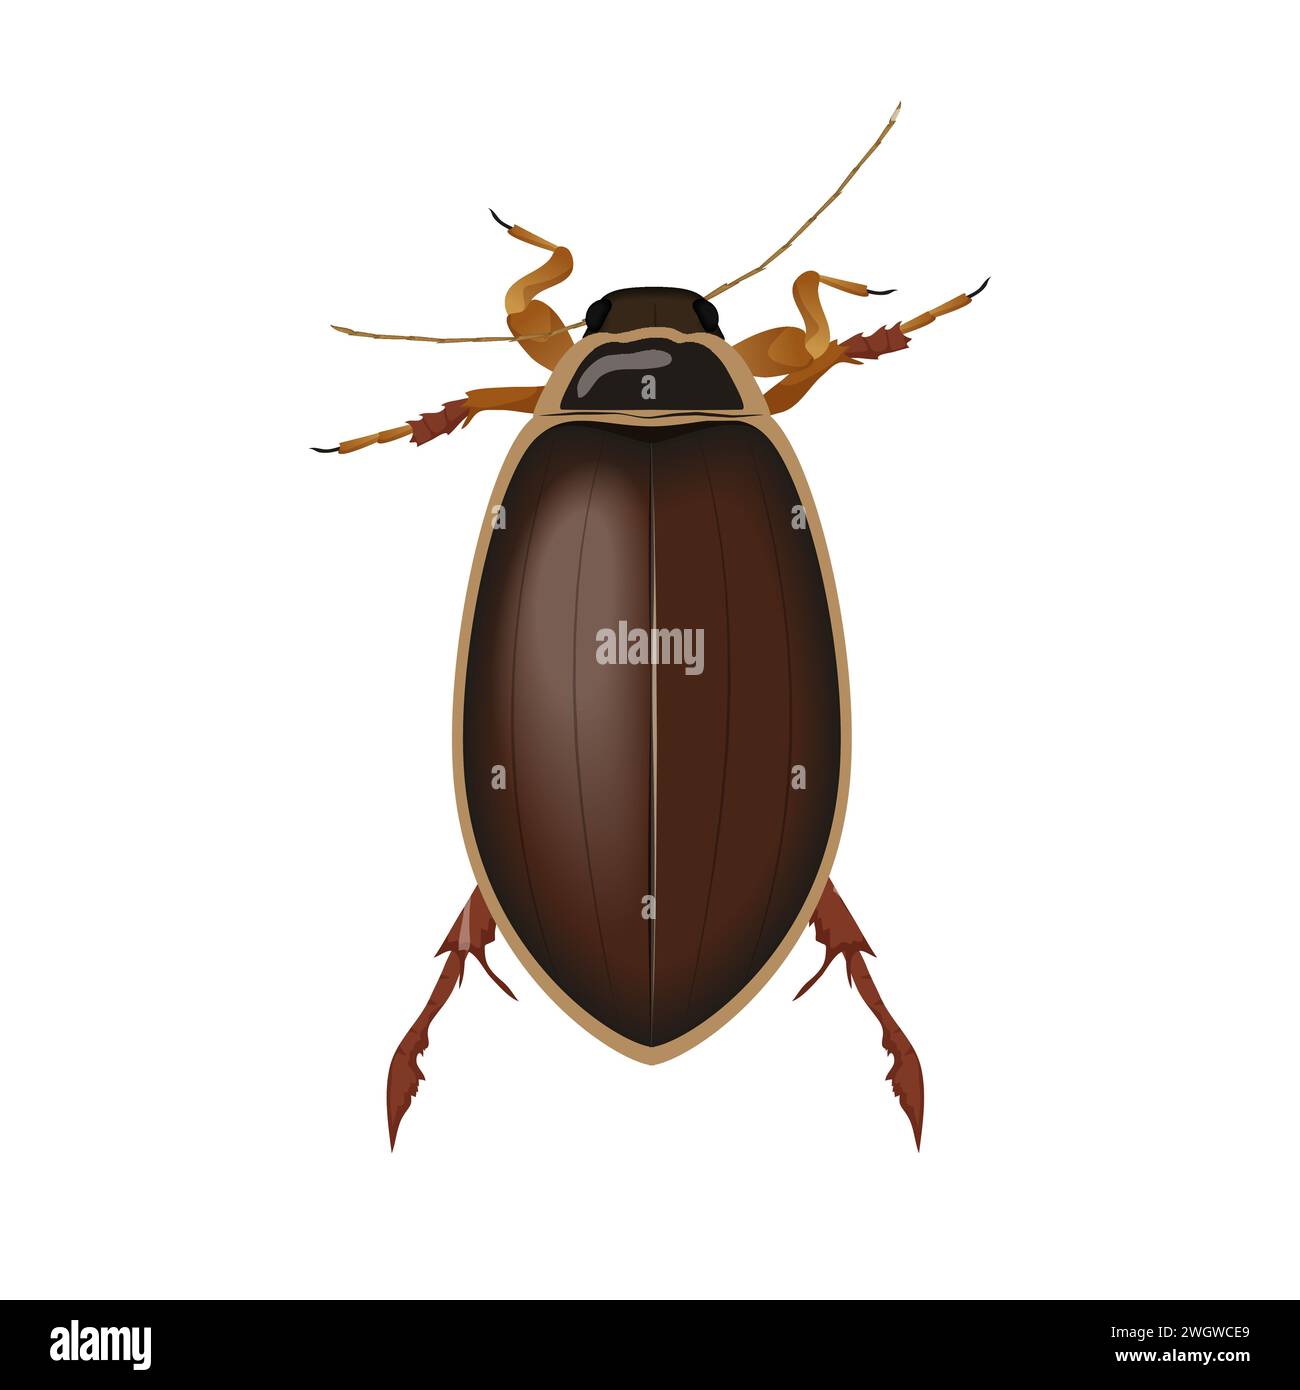 Coléoptère brun, vue de dessus d'insecte avec antennes et pattes, illustration vectorielle d'insecte nuisible Illustration de Vecteur